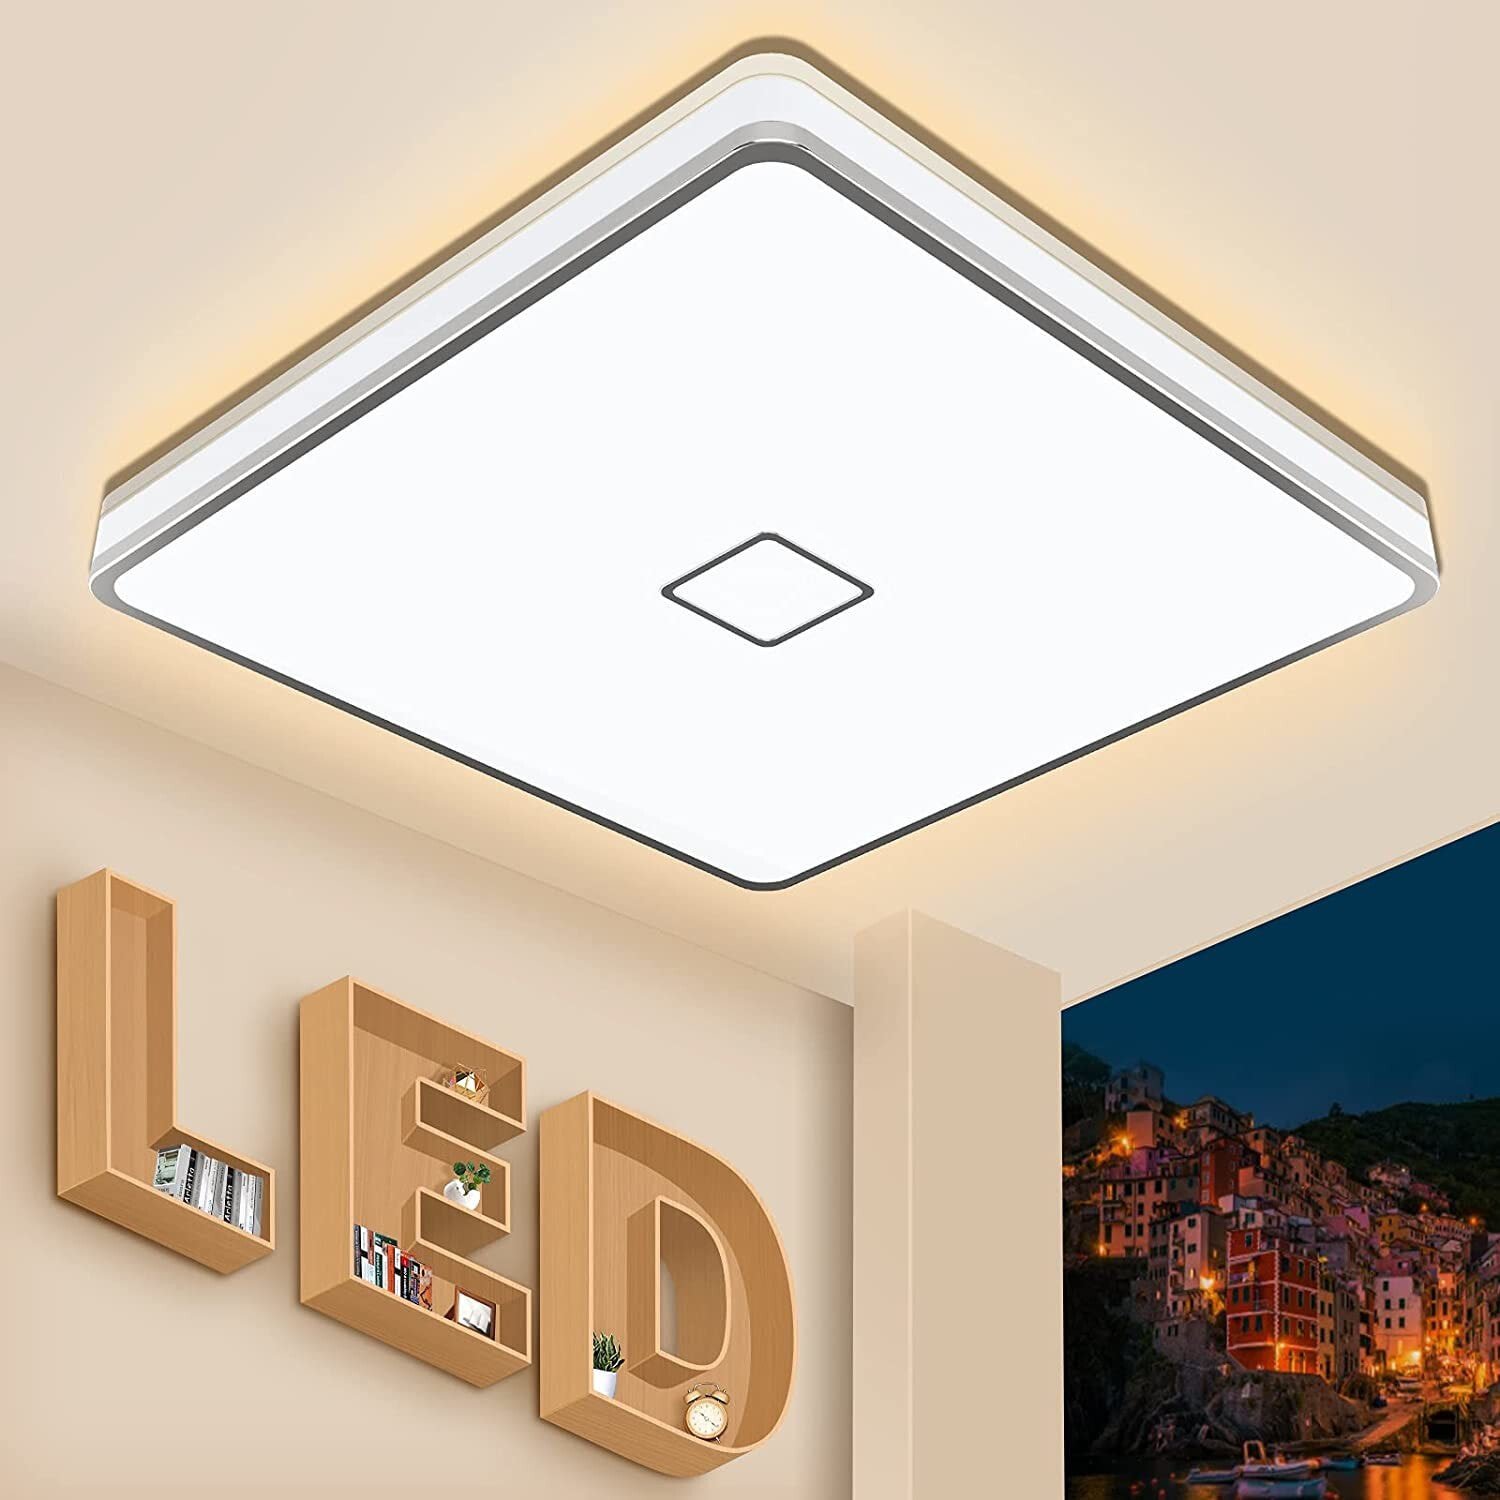 Светильник для ванной Airand 24 Вт Светодиодный потолочный светильник для ванной комнаты Светодиодный потолочный светильник IP44 водонепроницаемый светильник для ванной диаметром 32,5 см потолочный светильник для гостиной спальни детской комнаты 2050 LM п